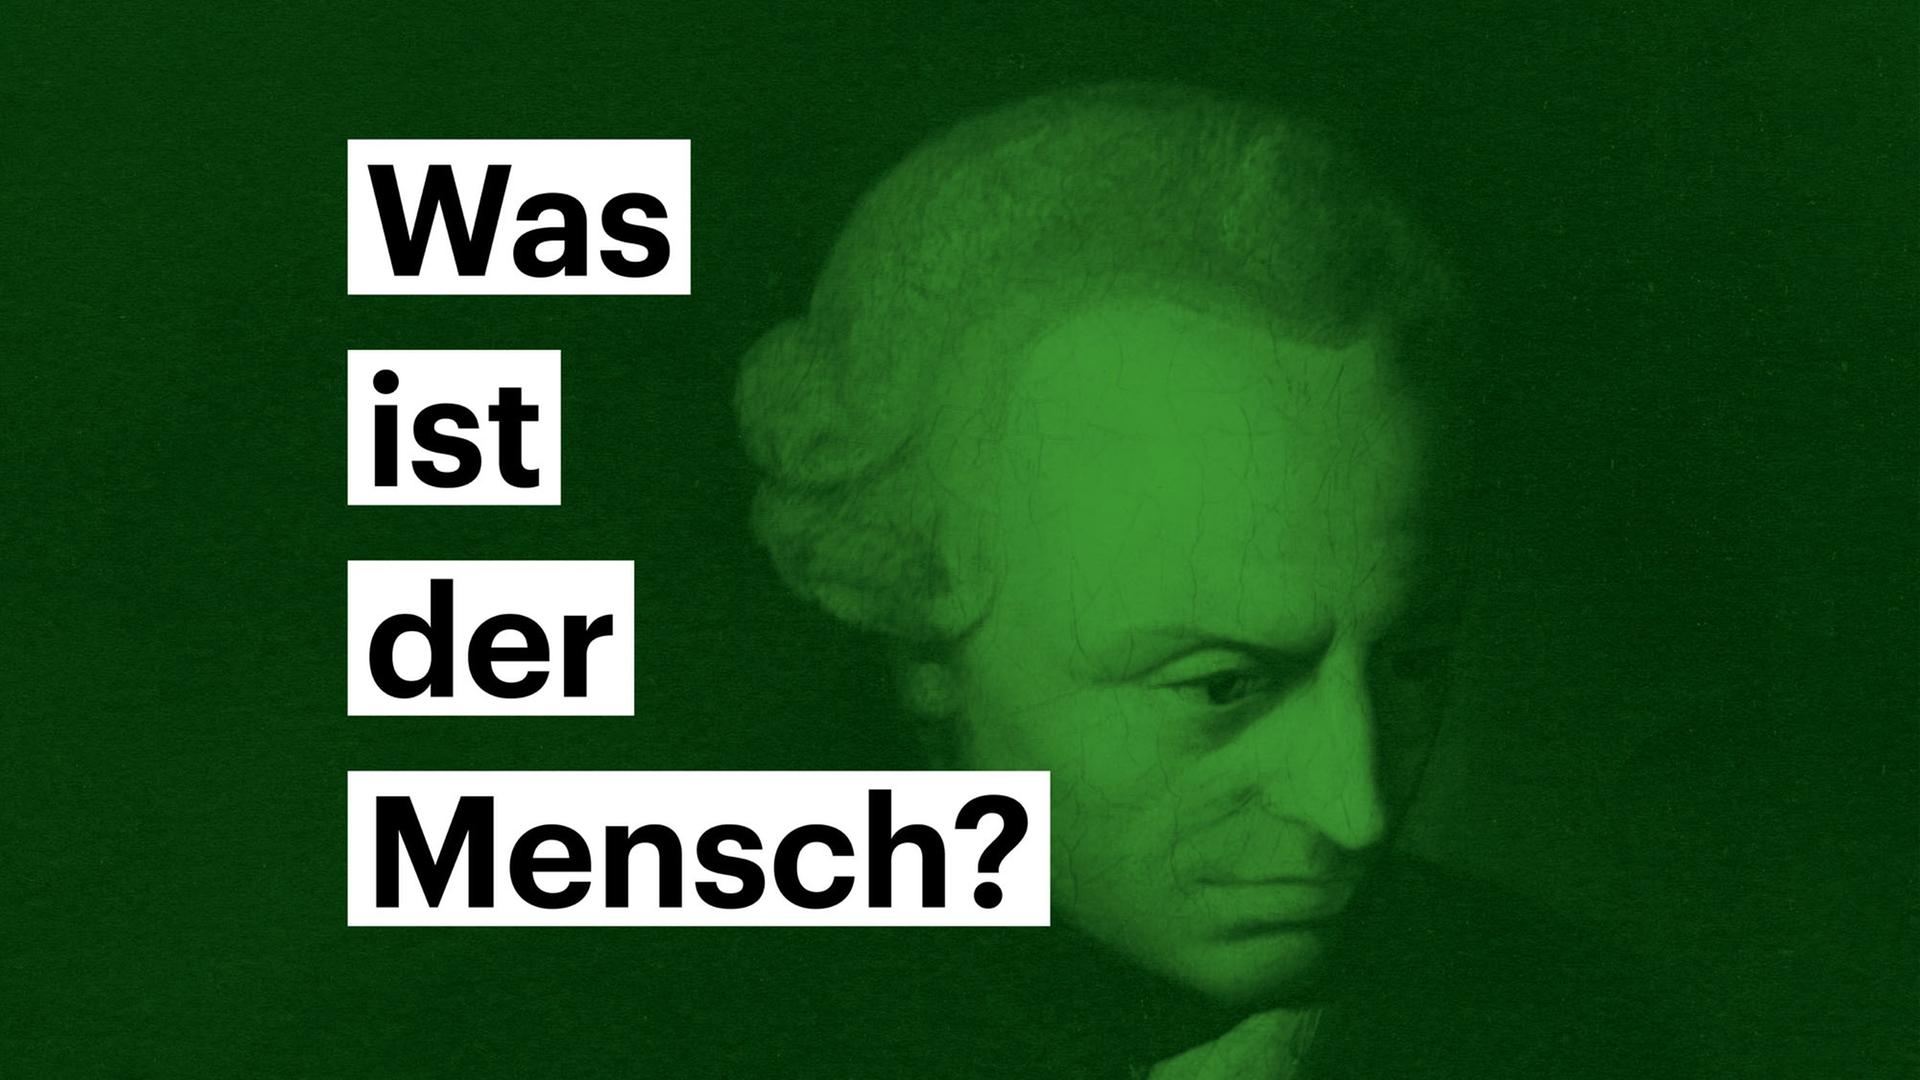 Portrait von Immanuel Kant - darauf steht die Frage "Was ist der Mensch?"